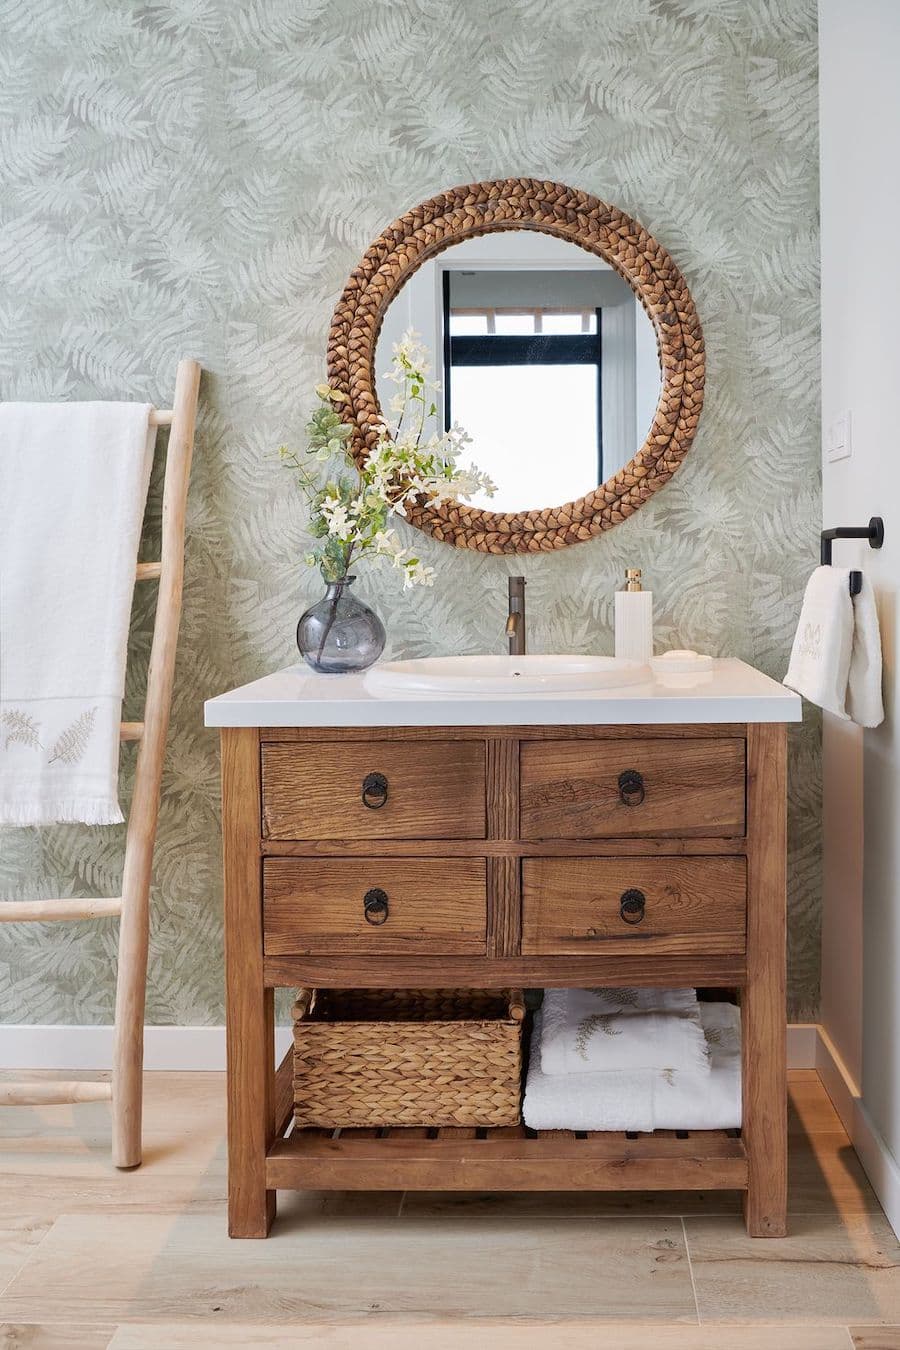 Baño rústico moderno con papel mural con hojas verdes. Mueble vanitorio de madera con 4 cajones y base blanca. Espejo redondo con marco de mimbre. 